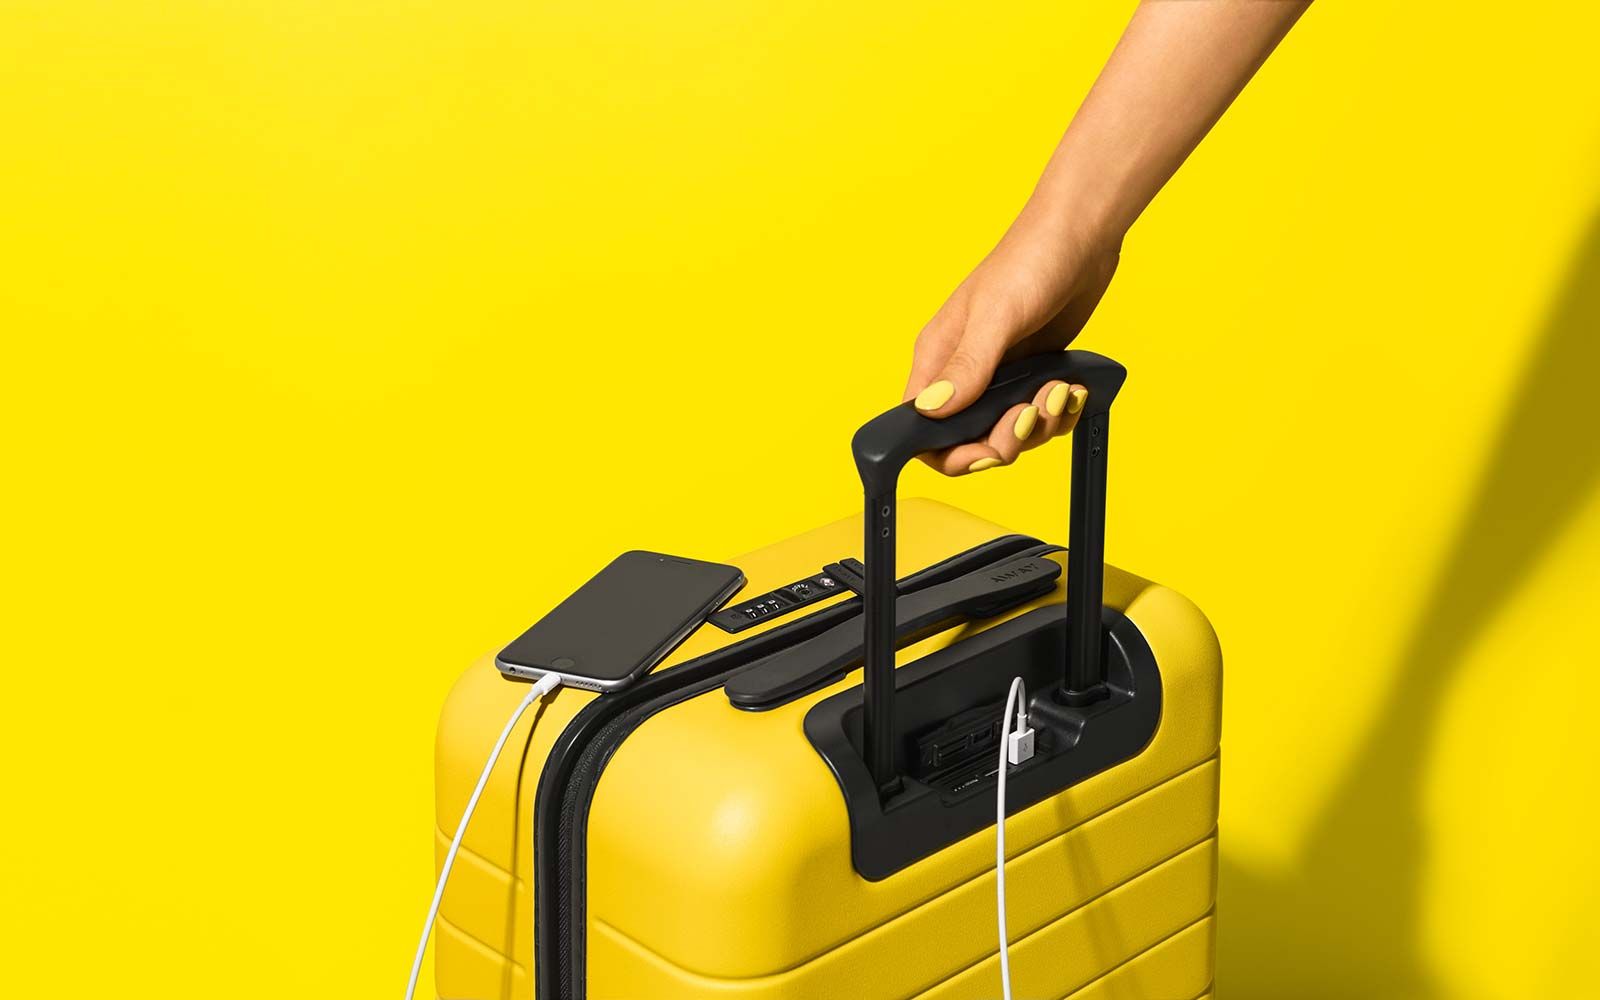 Equipaje de viaje de distancia Minions Despicable Me 3 equipaje colaboración estilo amarillo